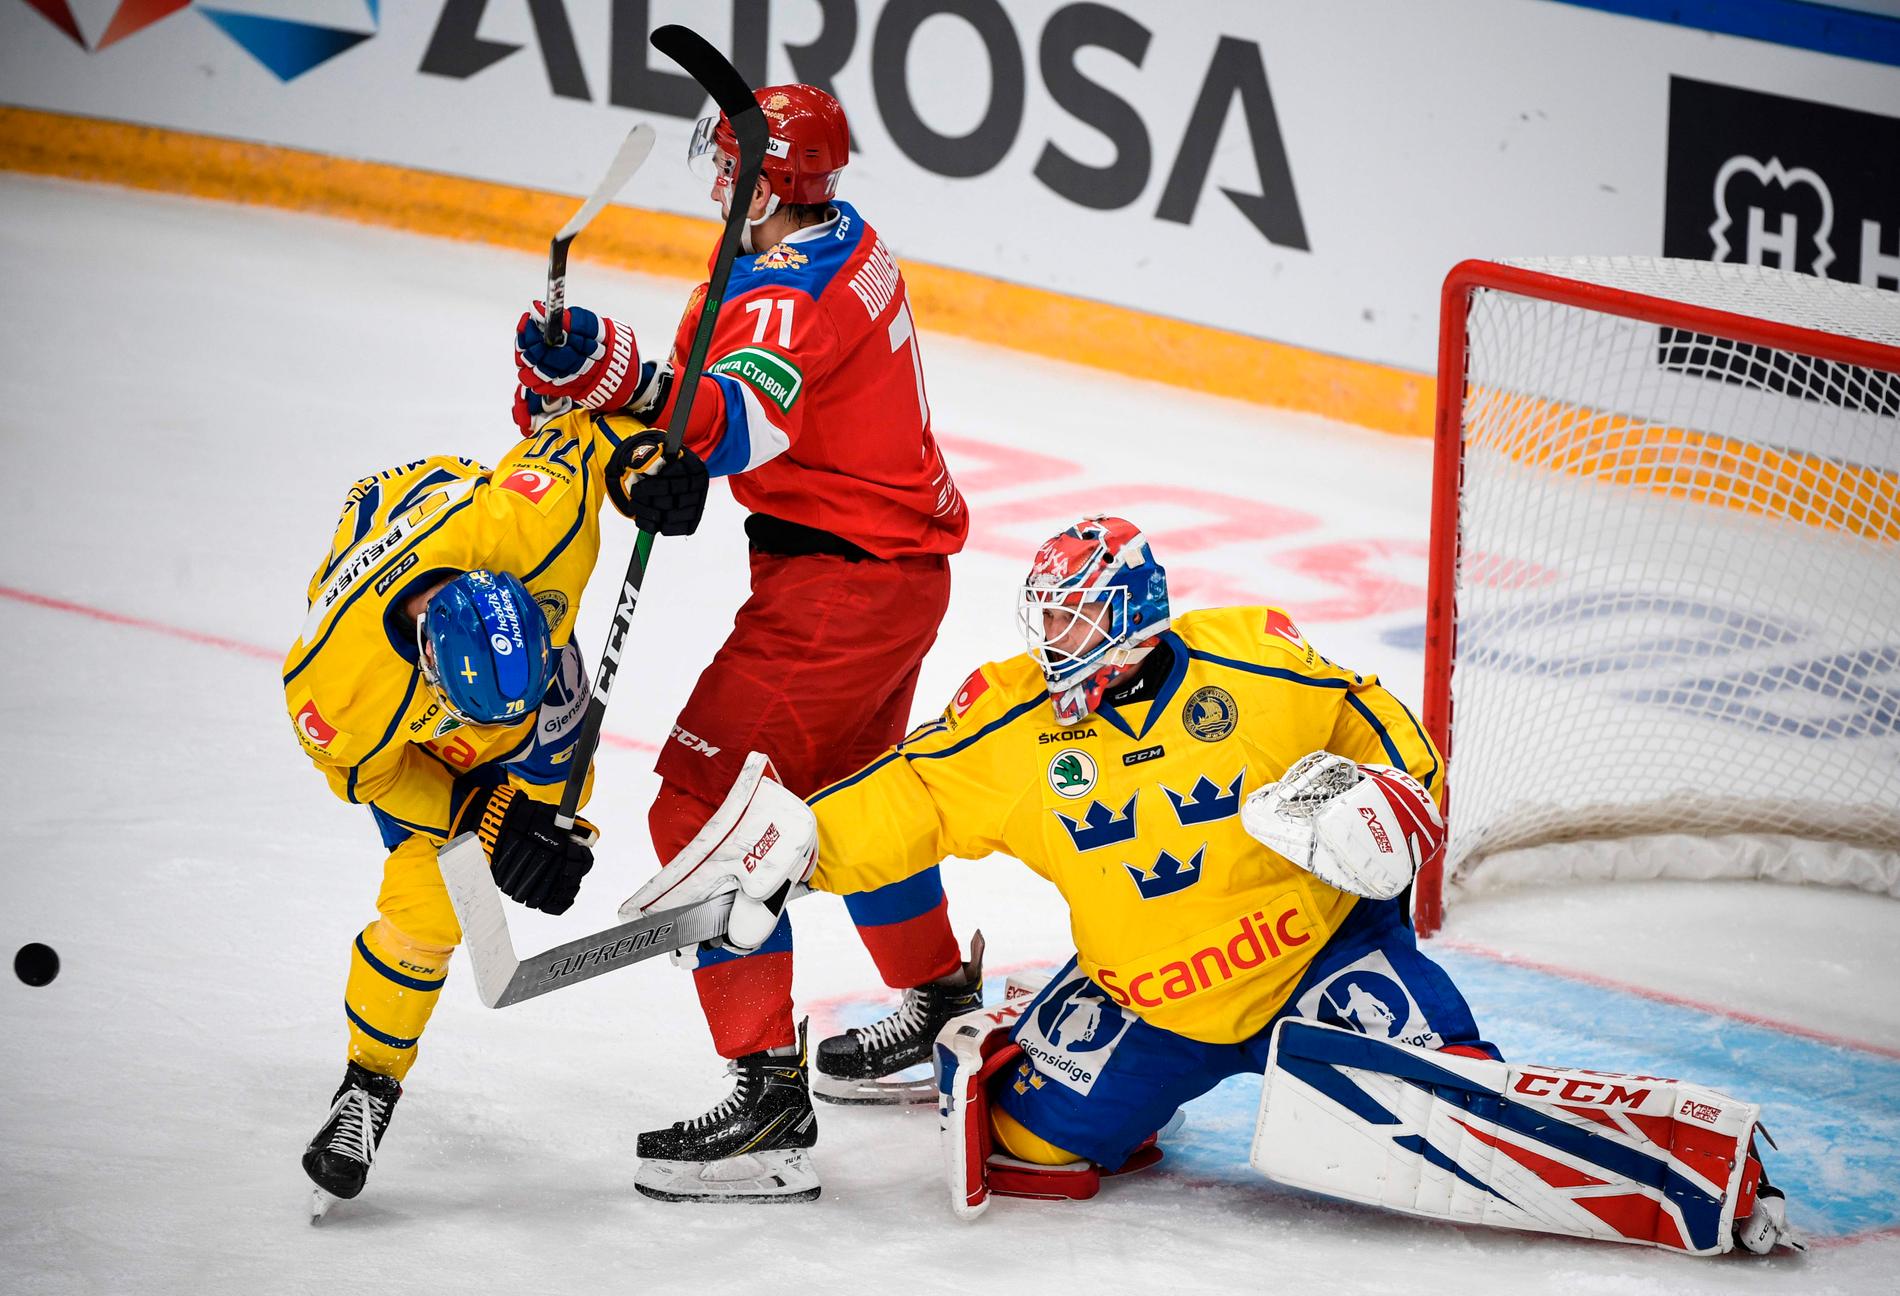 Svenske målvakten Lasse Johansson håller koll på både puck och spelare i segermatchen mot Ryssland, där han blev stor matchvinnare med 43 räddningar.